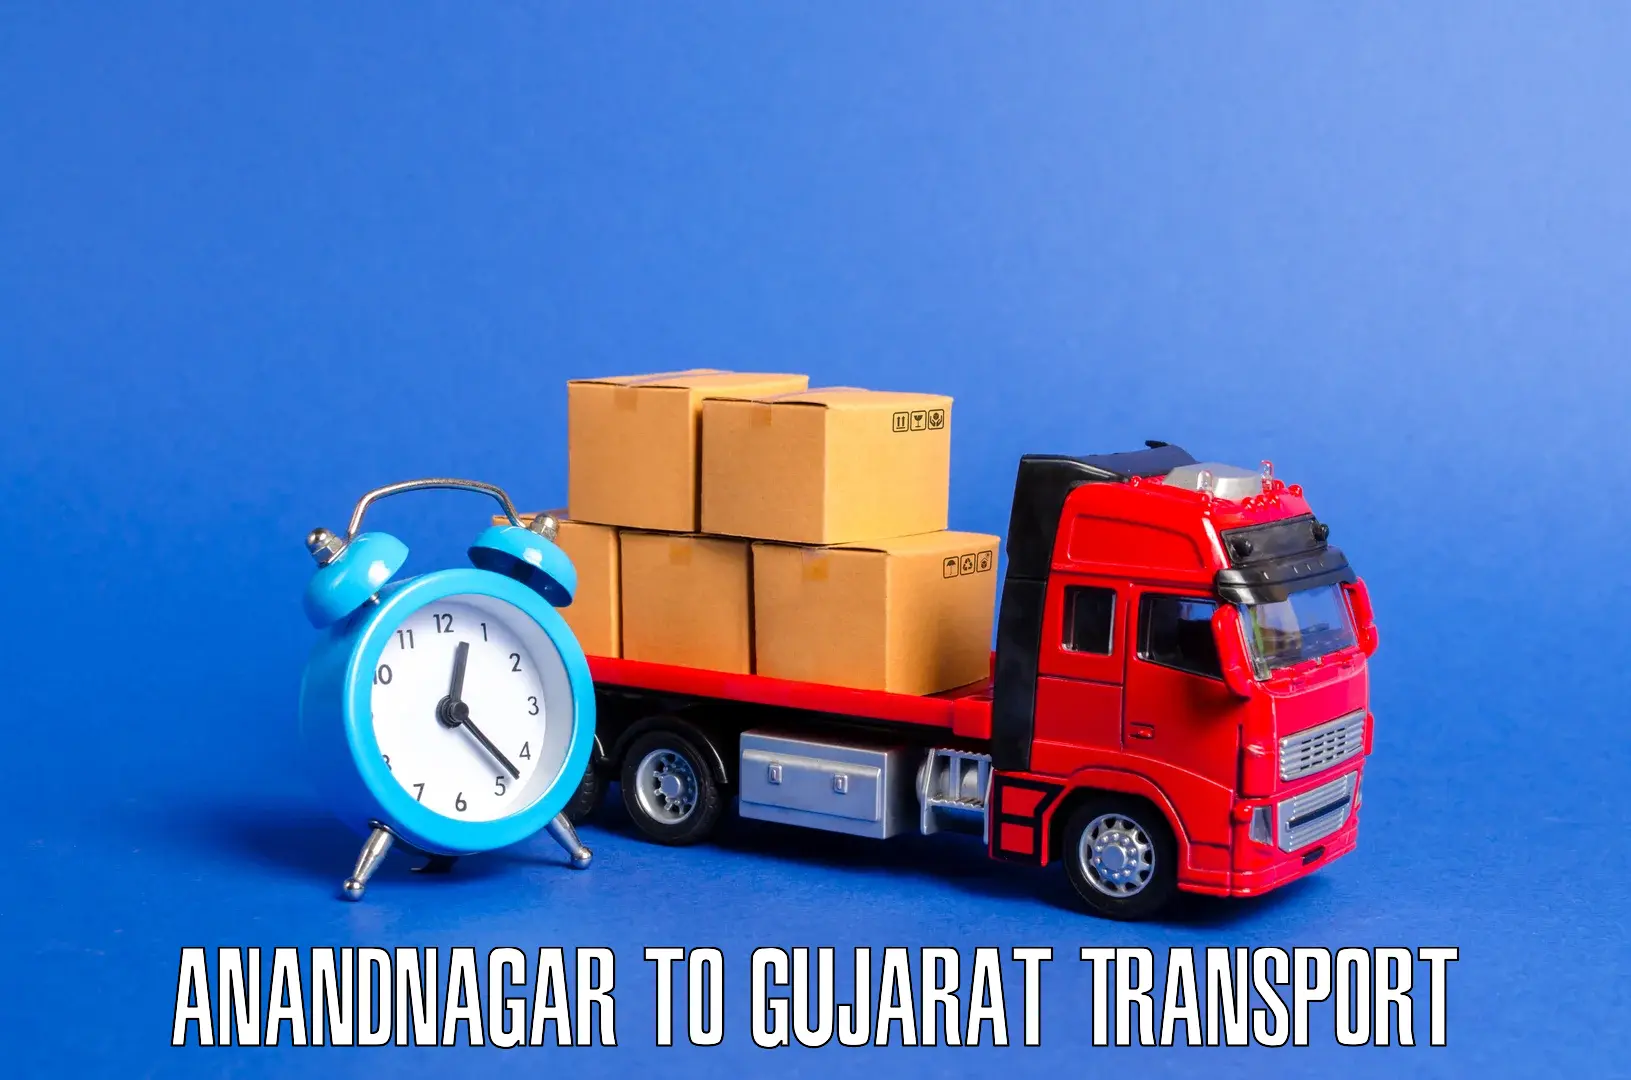 Nearby transport service Anandnagar to Visavadar